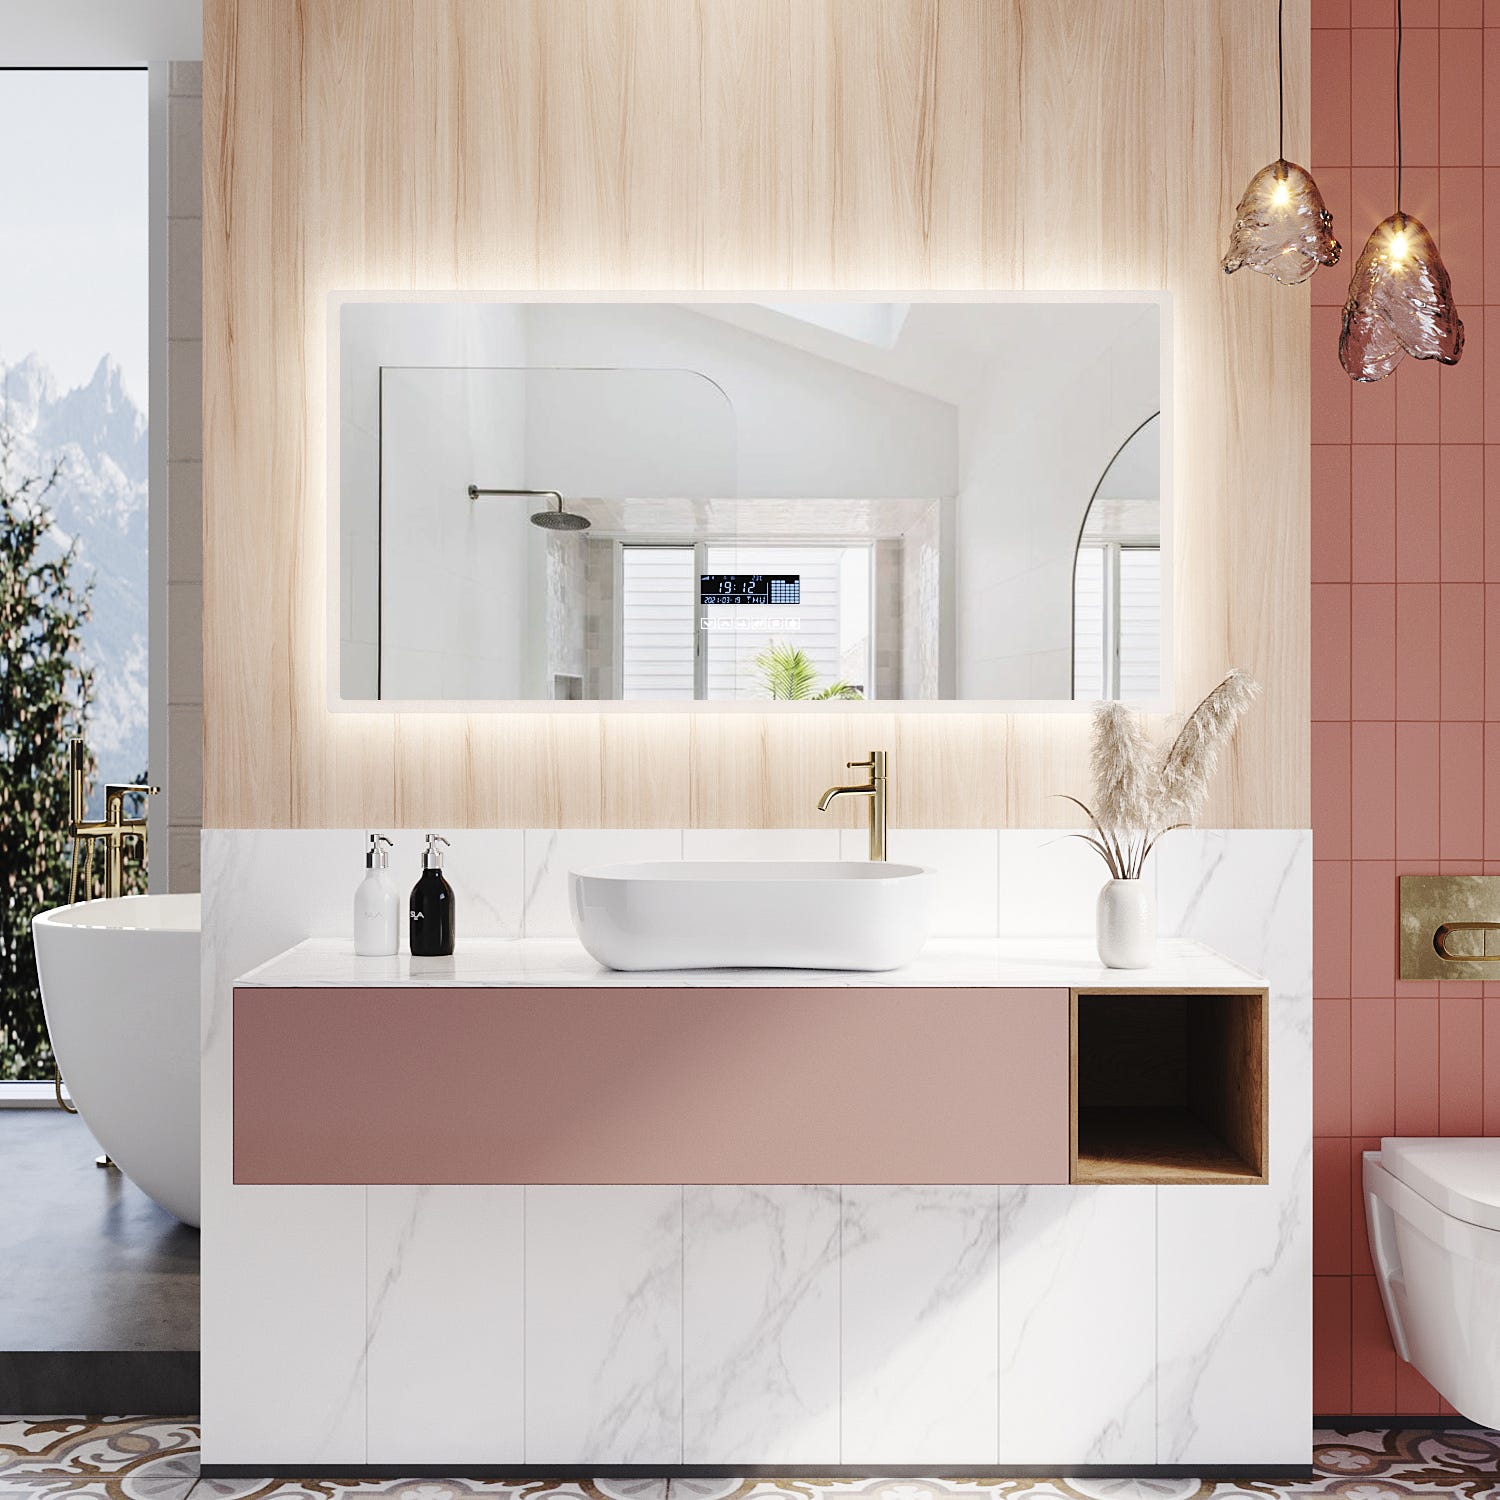 SIRHONA Miroir de salle de bain avec Mirroir LED rétro-éclairé